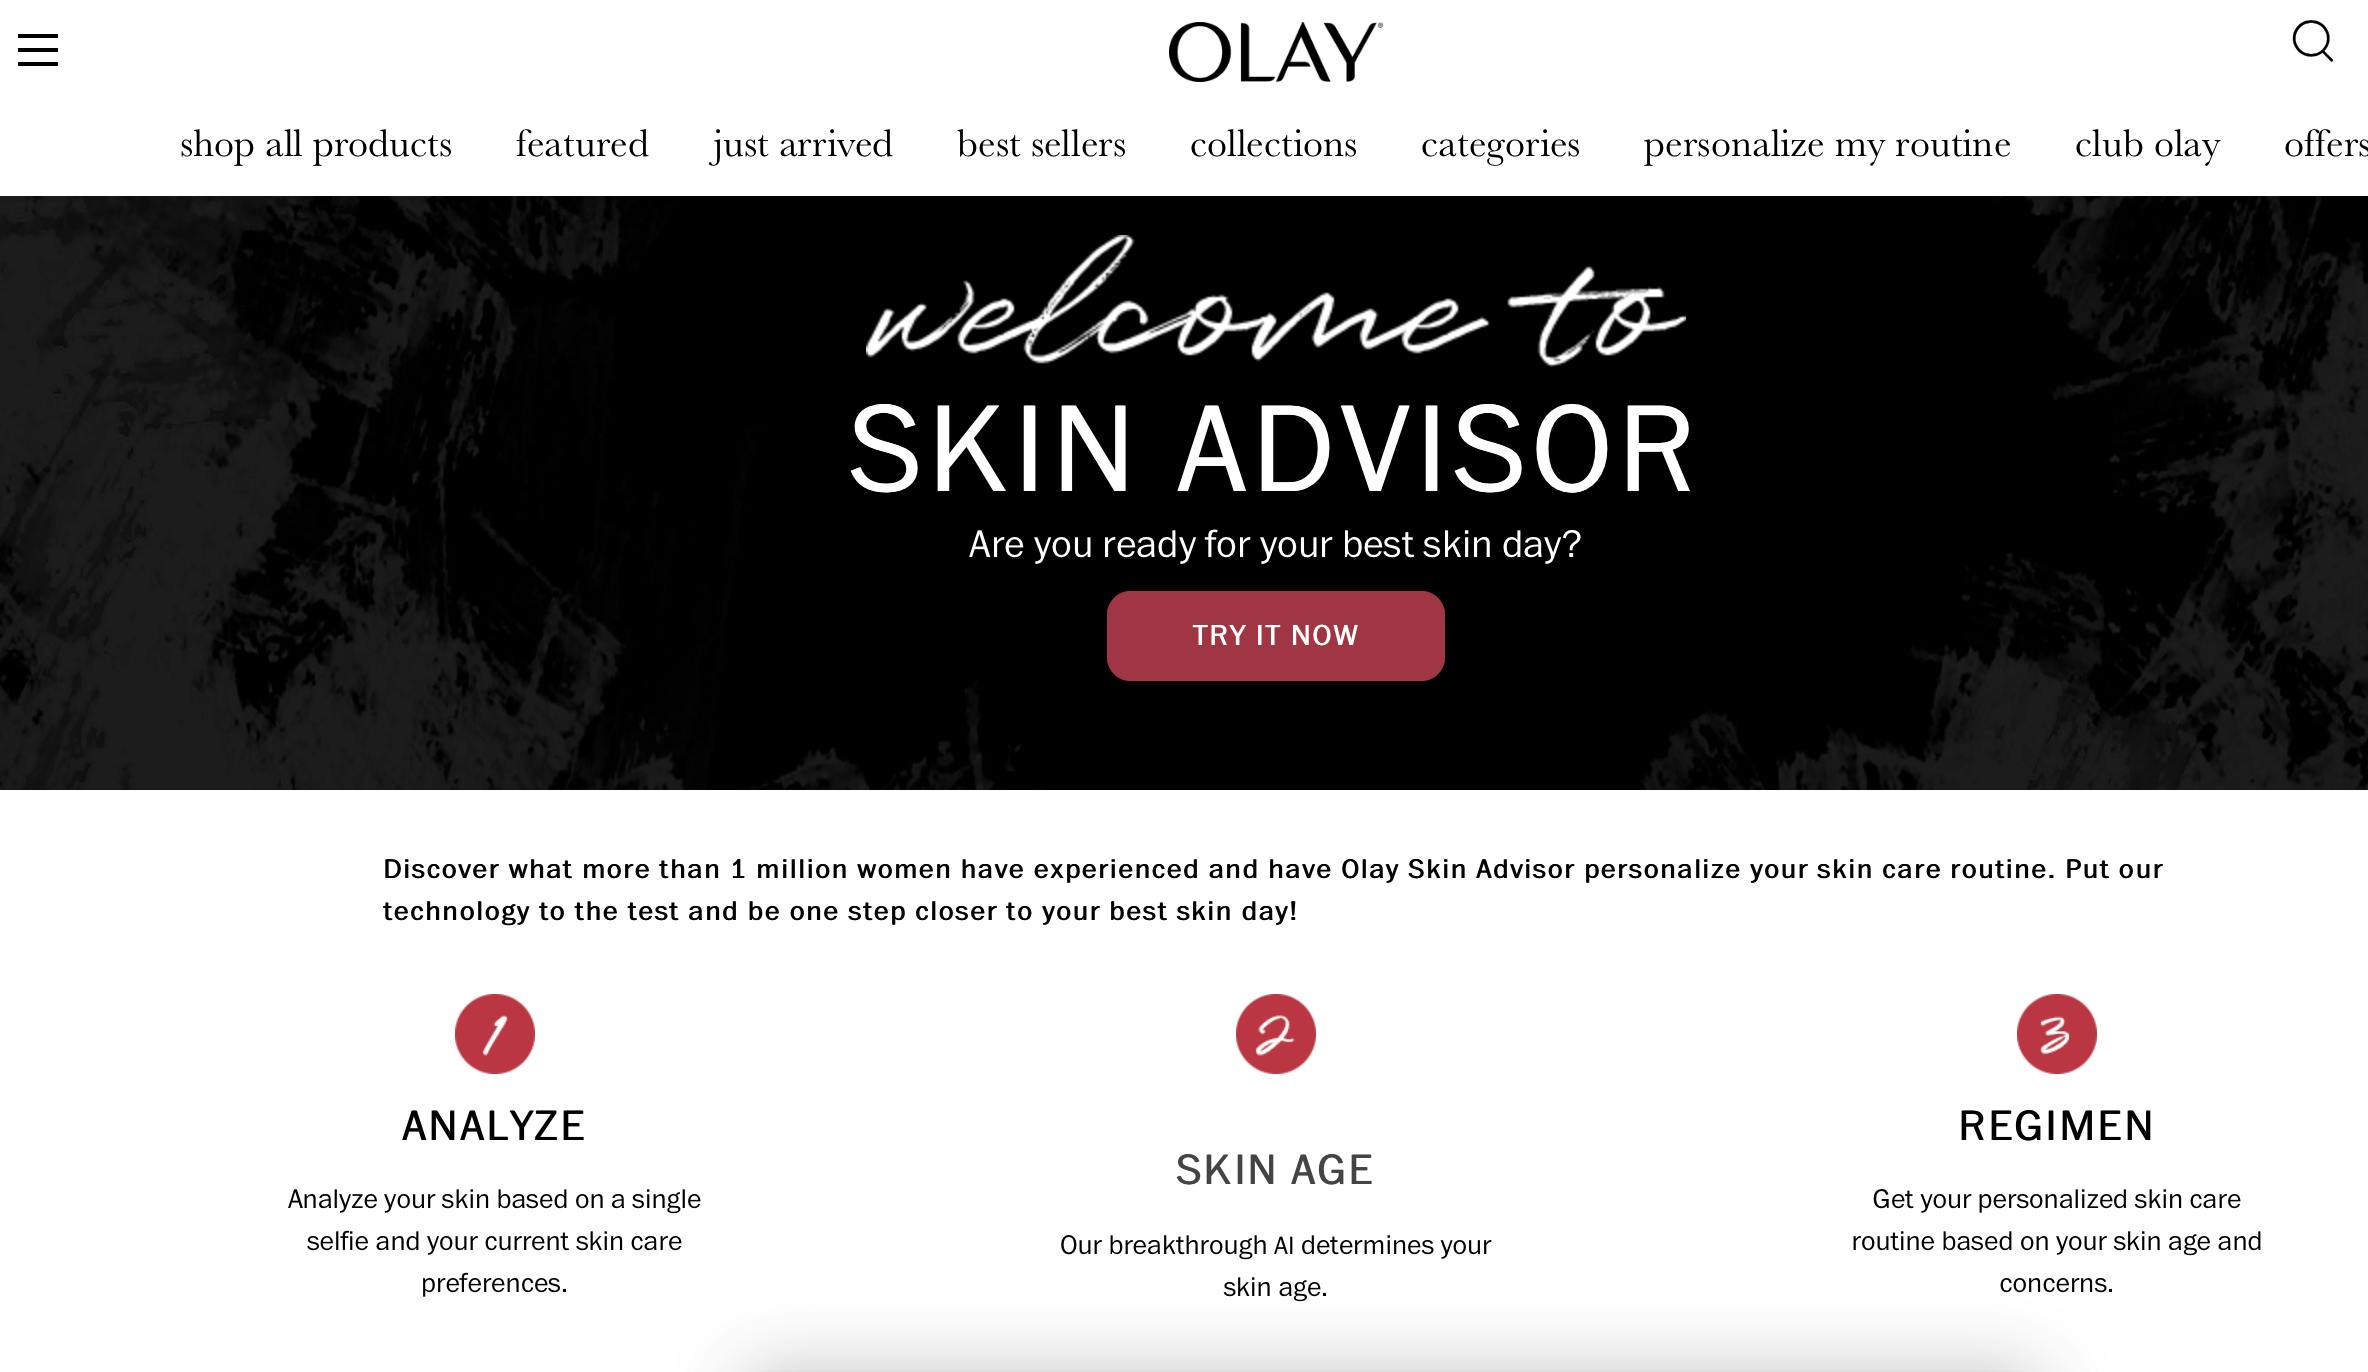 Olay's Skin Advisor